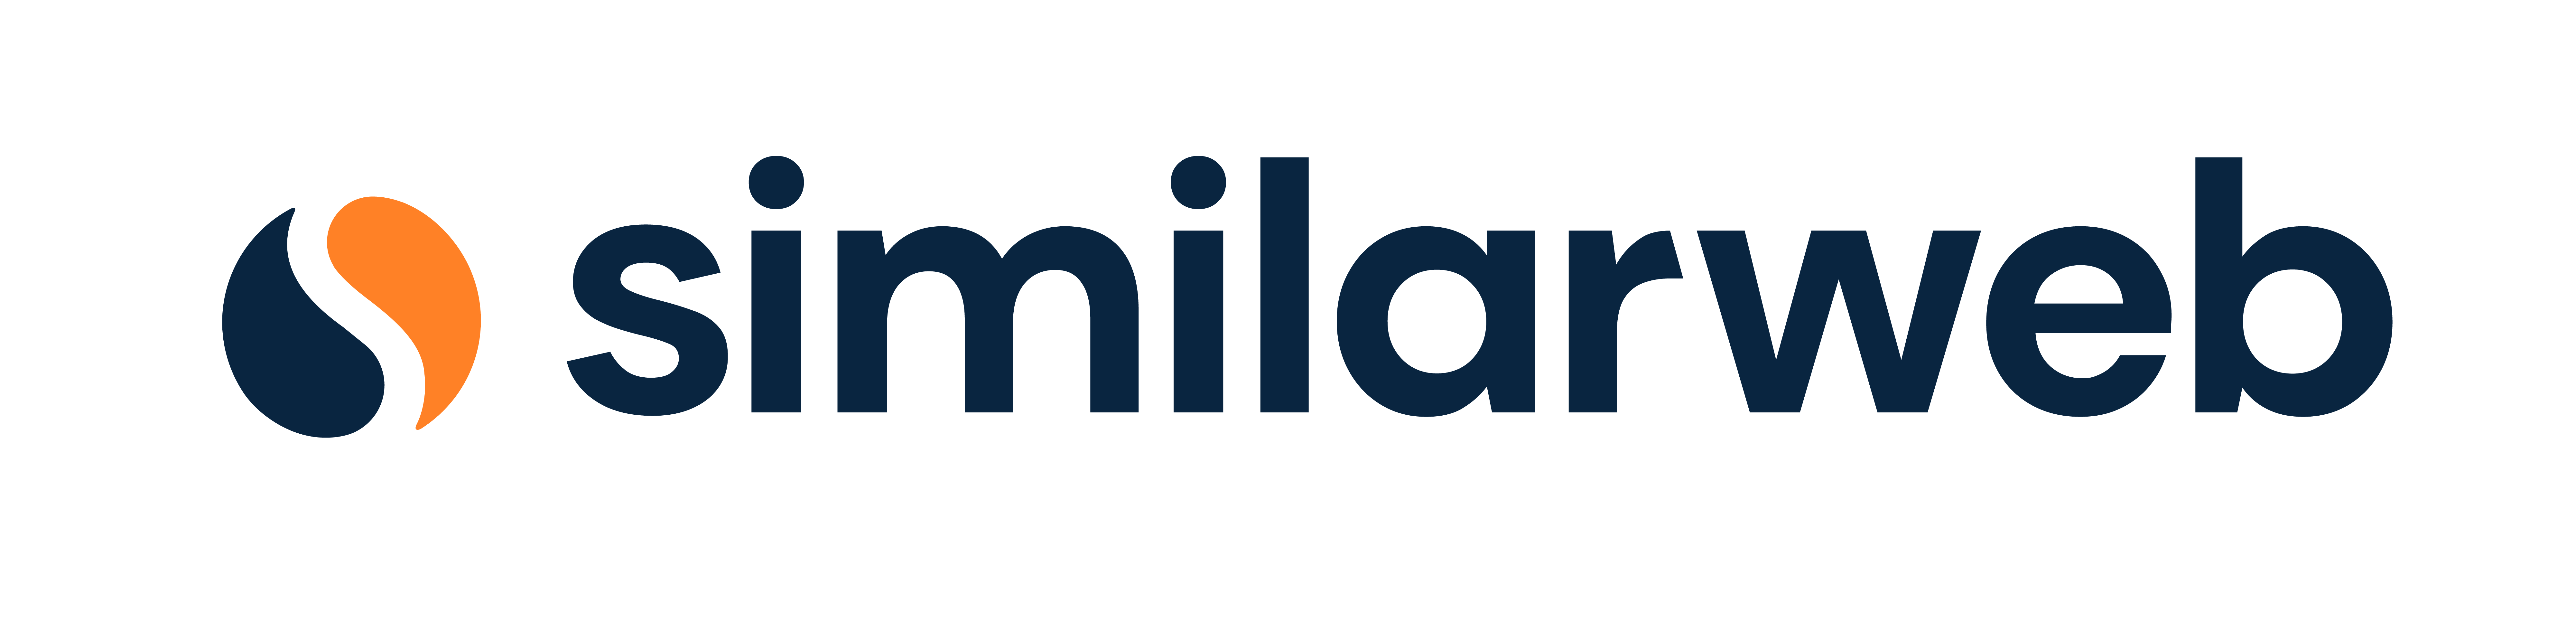 similarweb logo simple